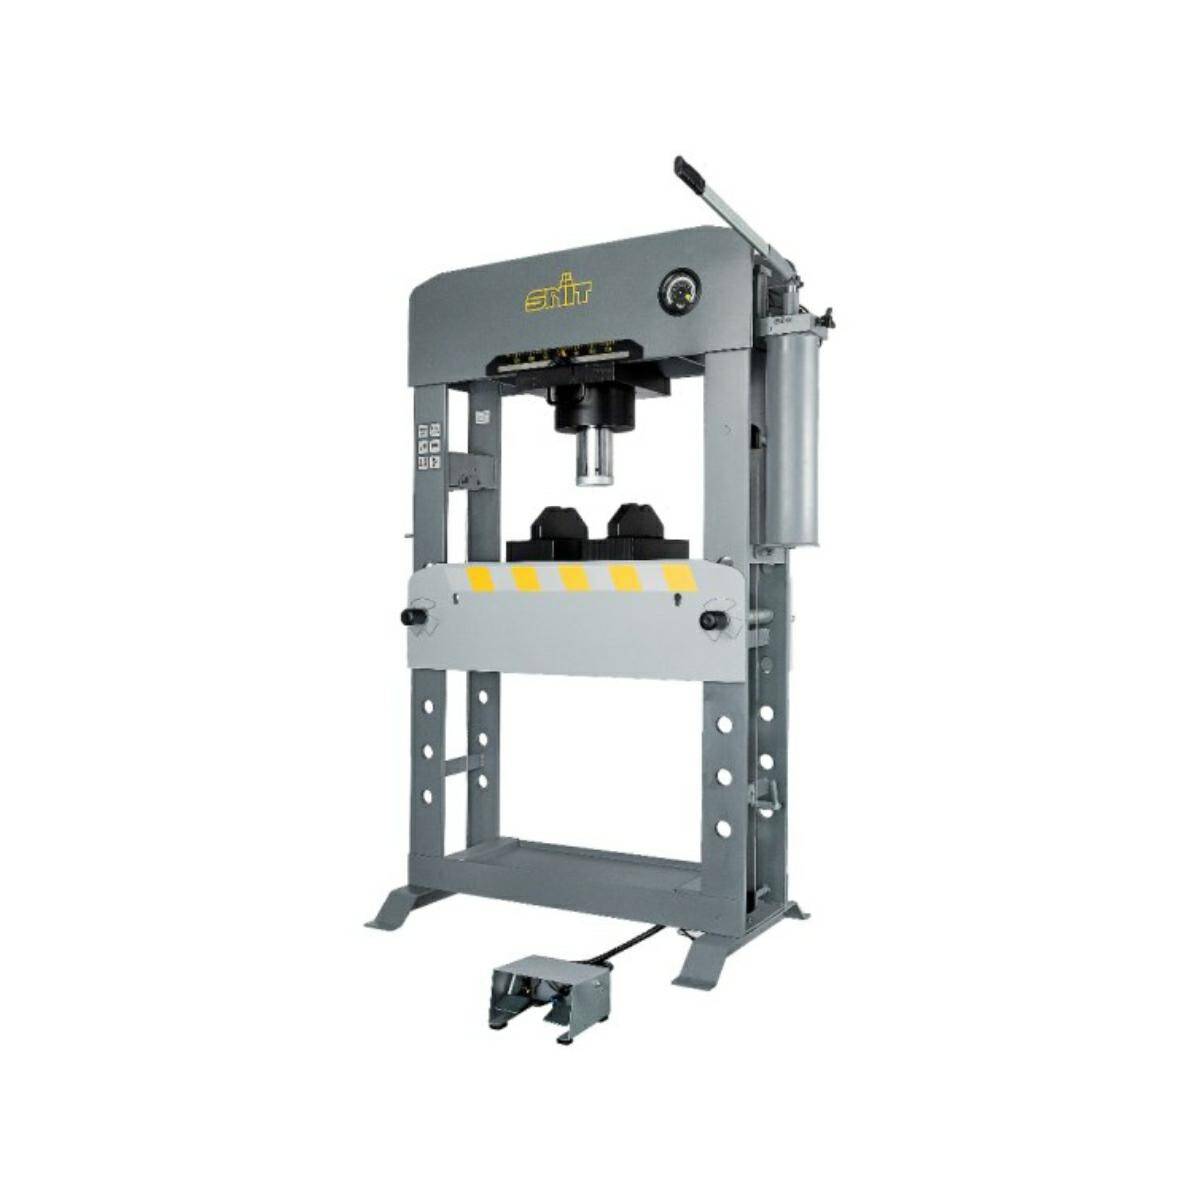 Workshop press Snit SP-100EAM 100T | manual+pneumatic operation | sliding cylinder